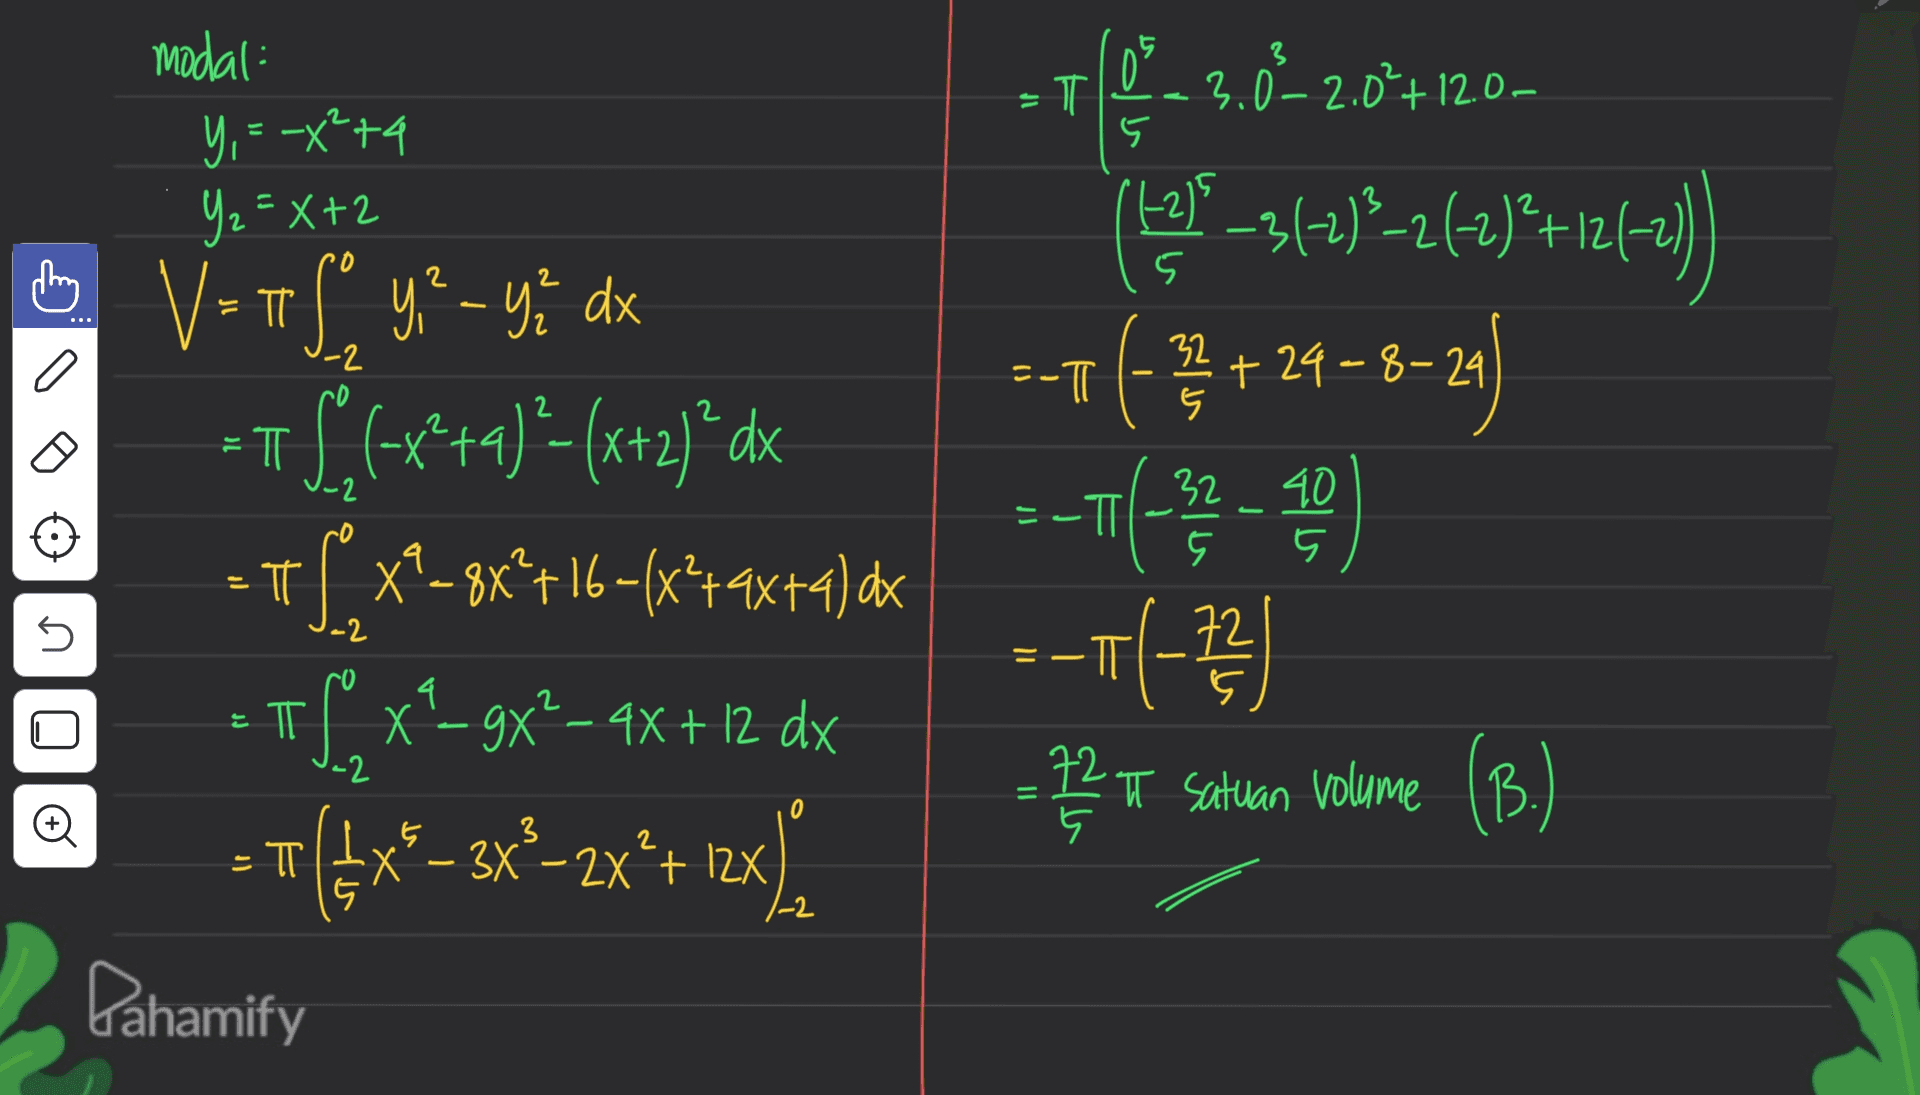 3 T 0% + 3.0-2.0%+12.00 modal Y, = -x +4 Y₂=X+2 5 (12) 2 0 2 2 5 . -2 = -T 32 +24-8-29 5 ㅠ - 2 18-314)*-2 kt)*+12475) -1 (] --+(-32 - -- (-73 ) - TT 6 V=If y - ye dx V ? =TS(<x*+4) ?- (x+2) ’dx = π T S x?-8x*+16+(x*+9x+4) dx of x-gx² - 4x + 12 dx + =={{x®– 3x*-zx*+ 1x). 5 5 -2 4 = ㅠ 72 5 72 T satuan volume (B. -2 = 0 Đ 3 5 .5 Х + bahamify 